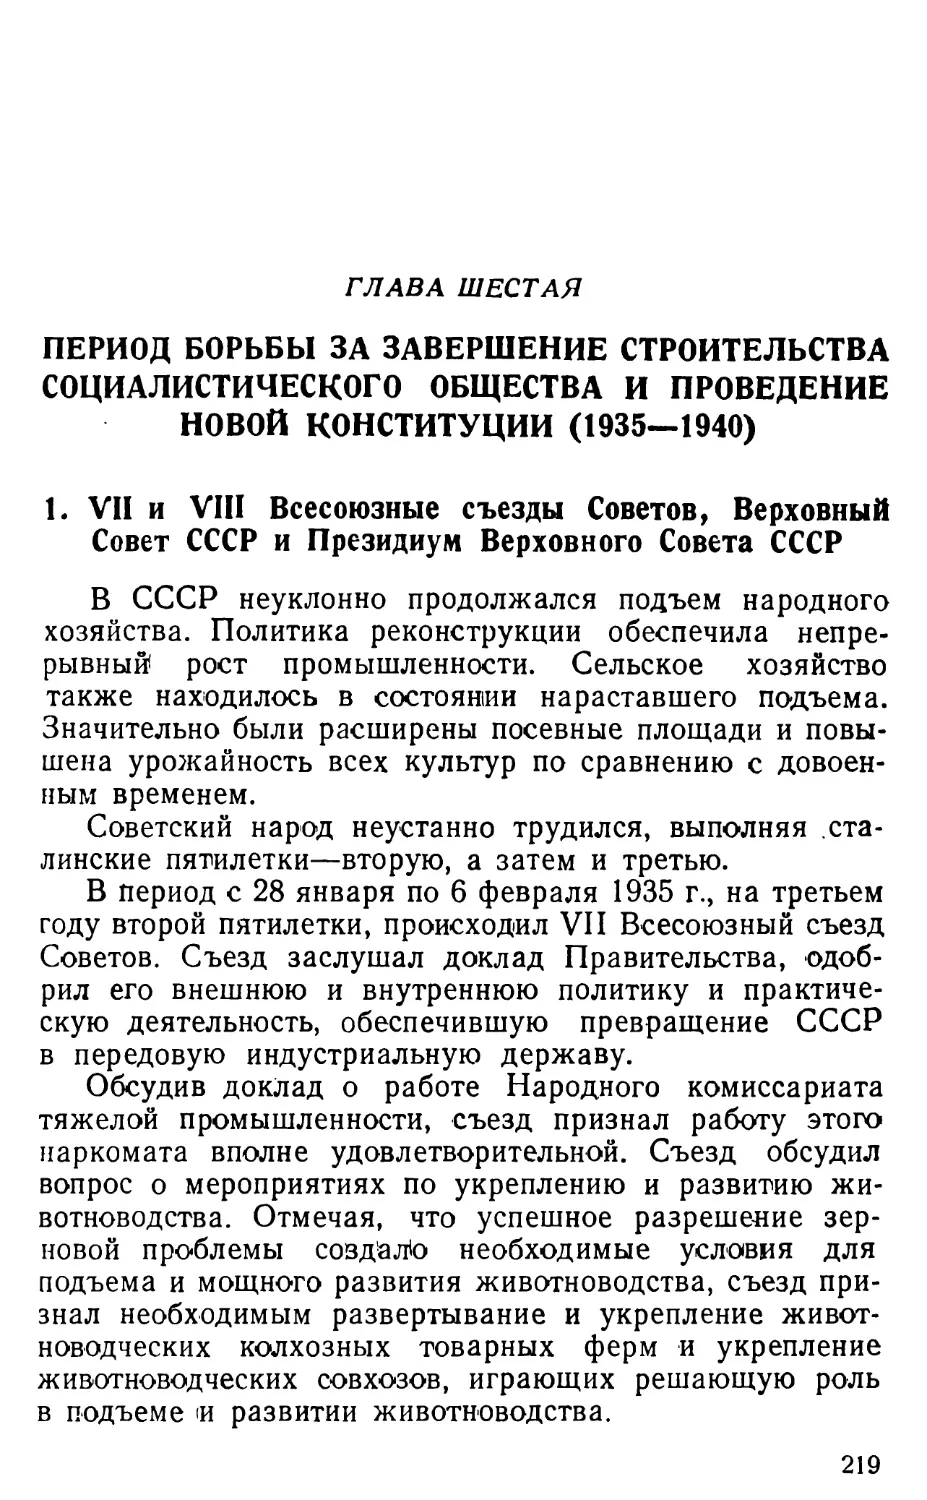 1. VII и VIII Всесоюзные съезды Советов, Верховный Совет СССР и Президиум Верховного Совета СССР